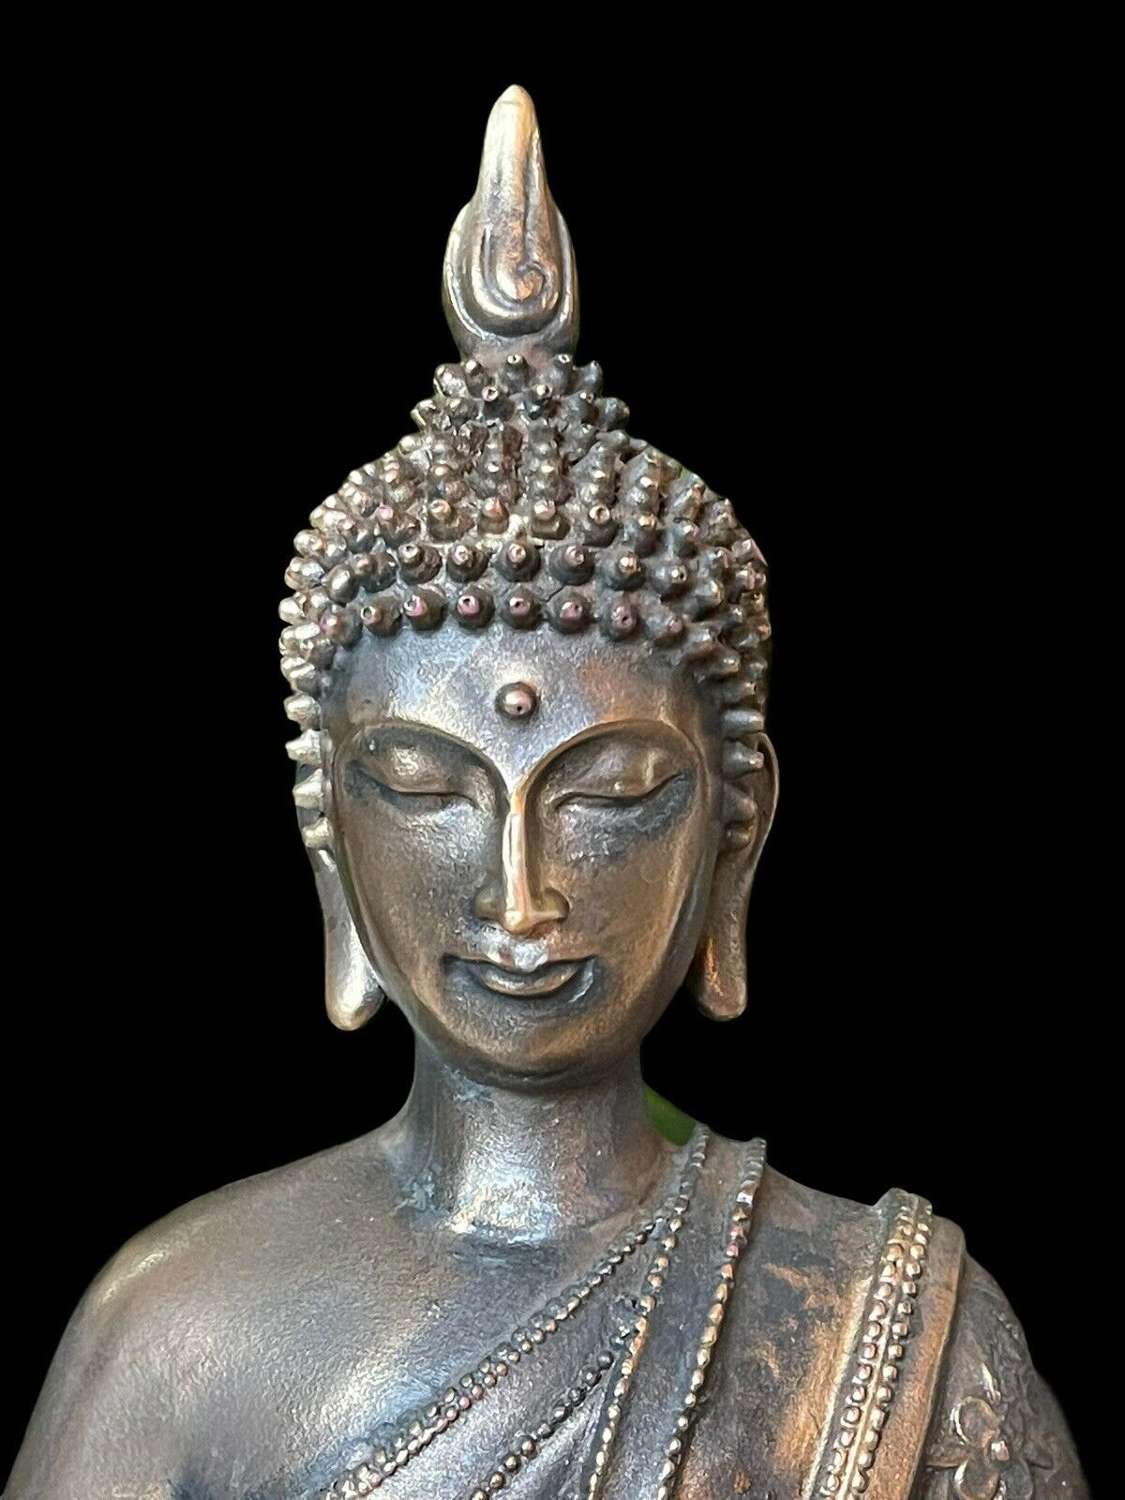 Bronze seated Buddha